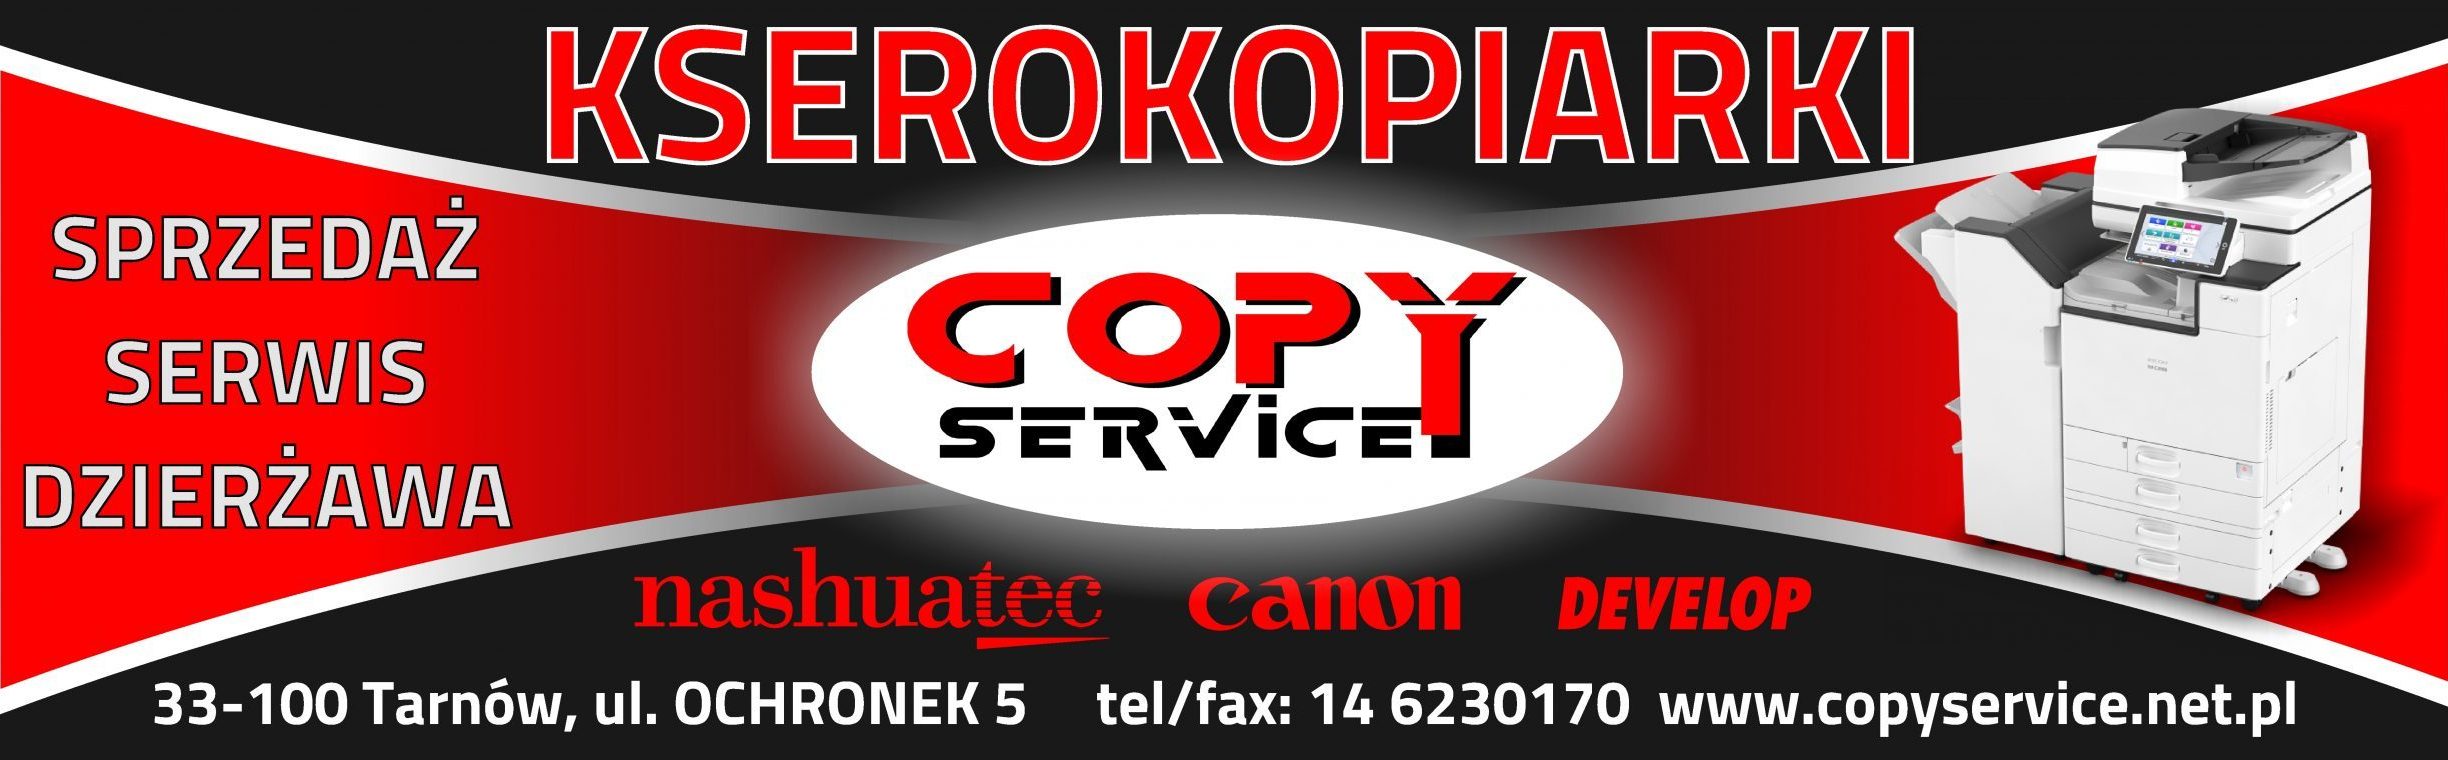 Copy Service – Kserokopiarki – Sprzedaż – Dzierżawa – Serwis